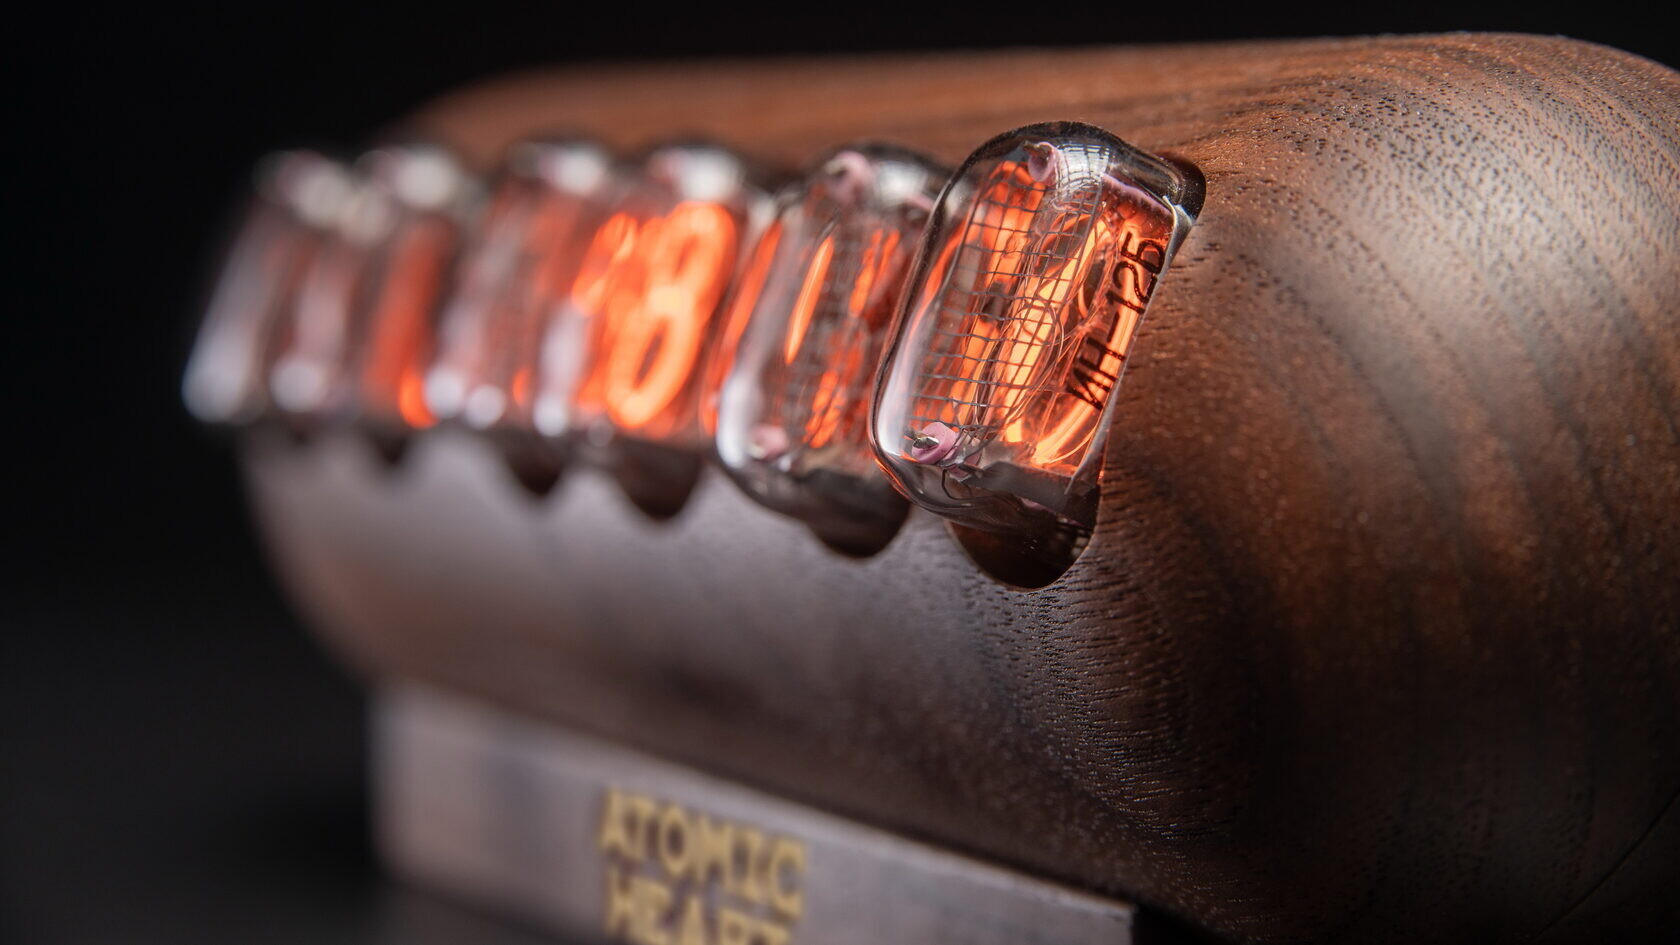 Ламповые часы «Капсула» в стилистике Atomic Heart